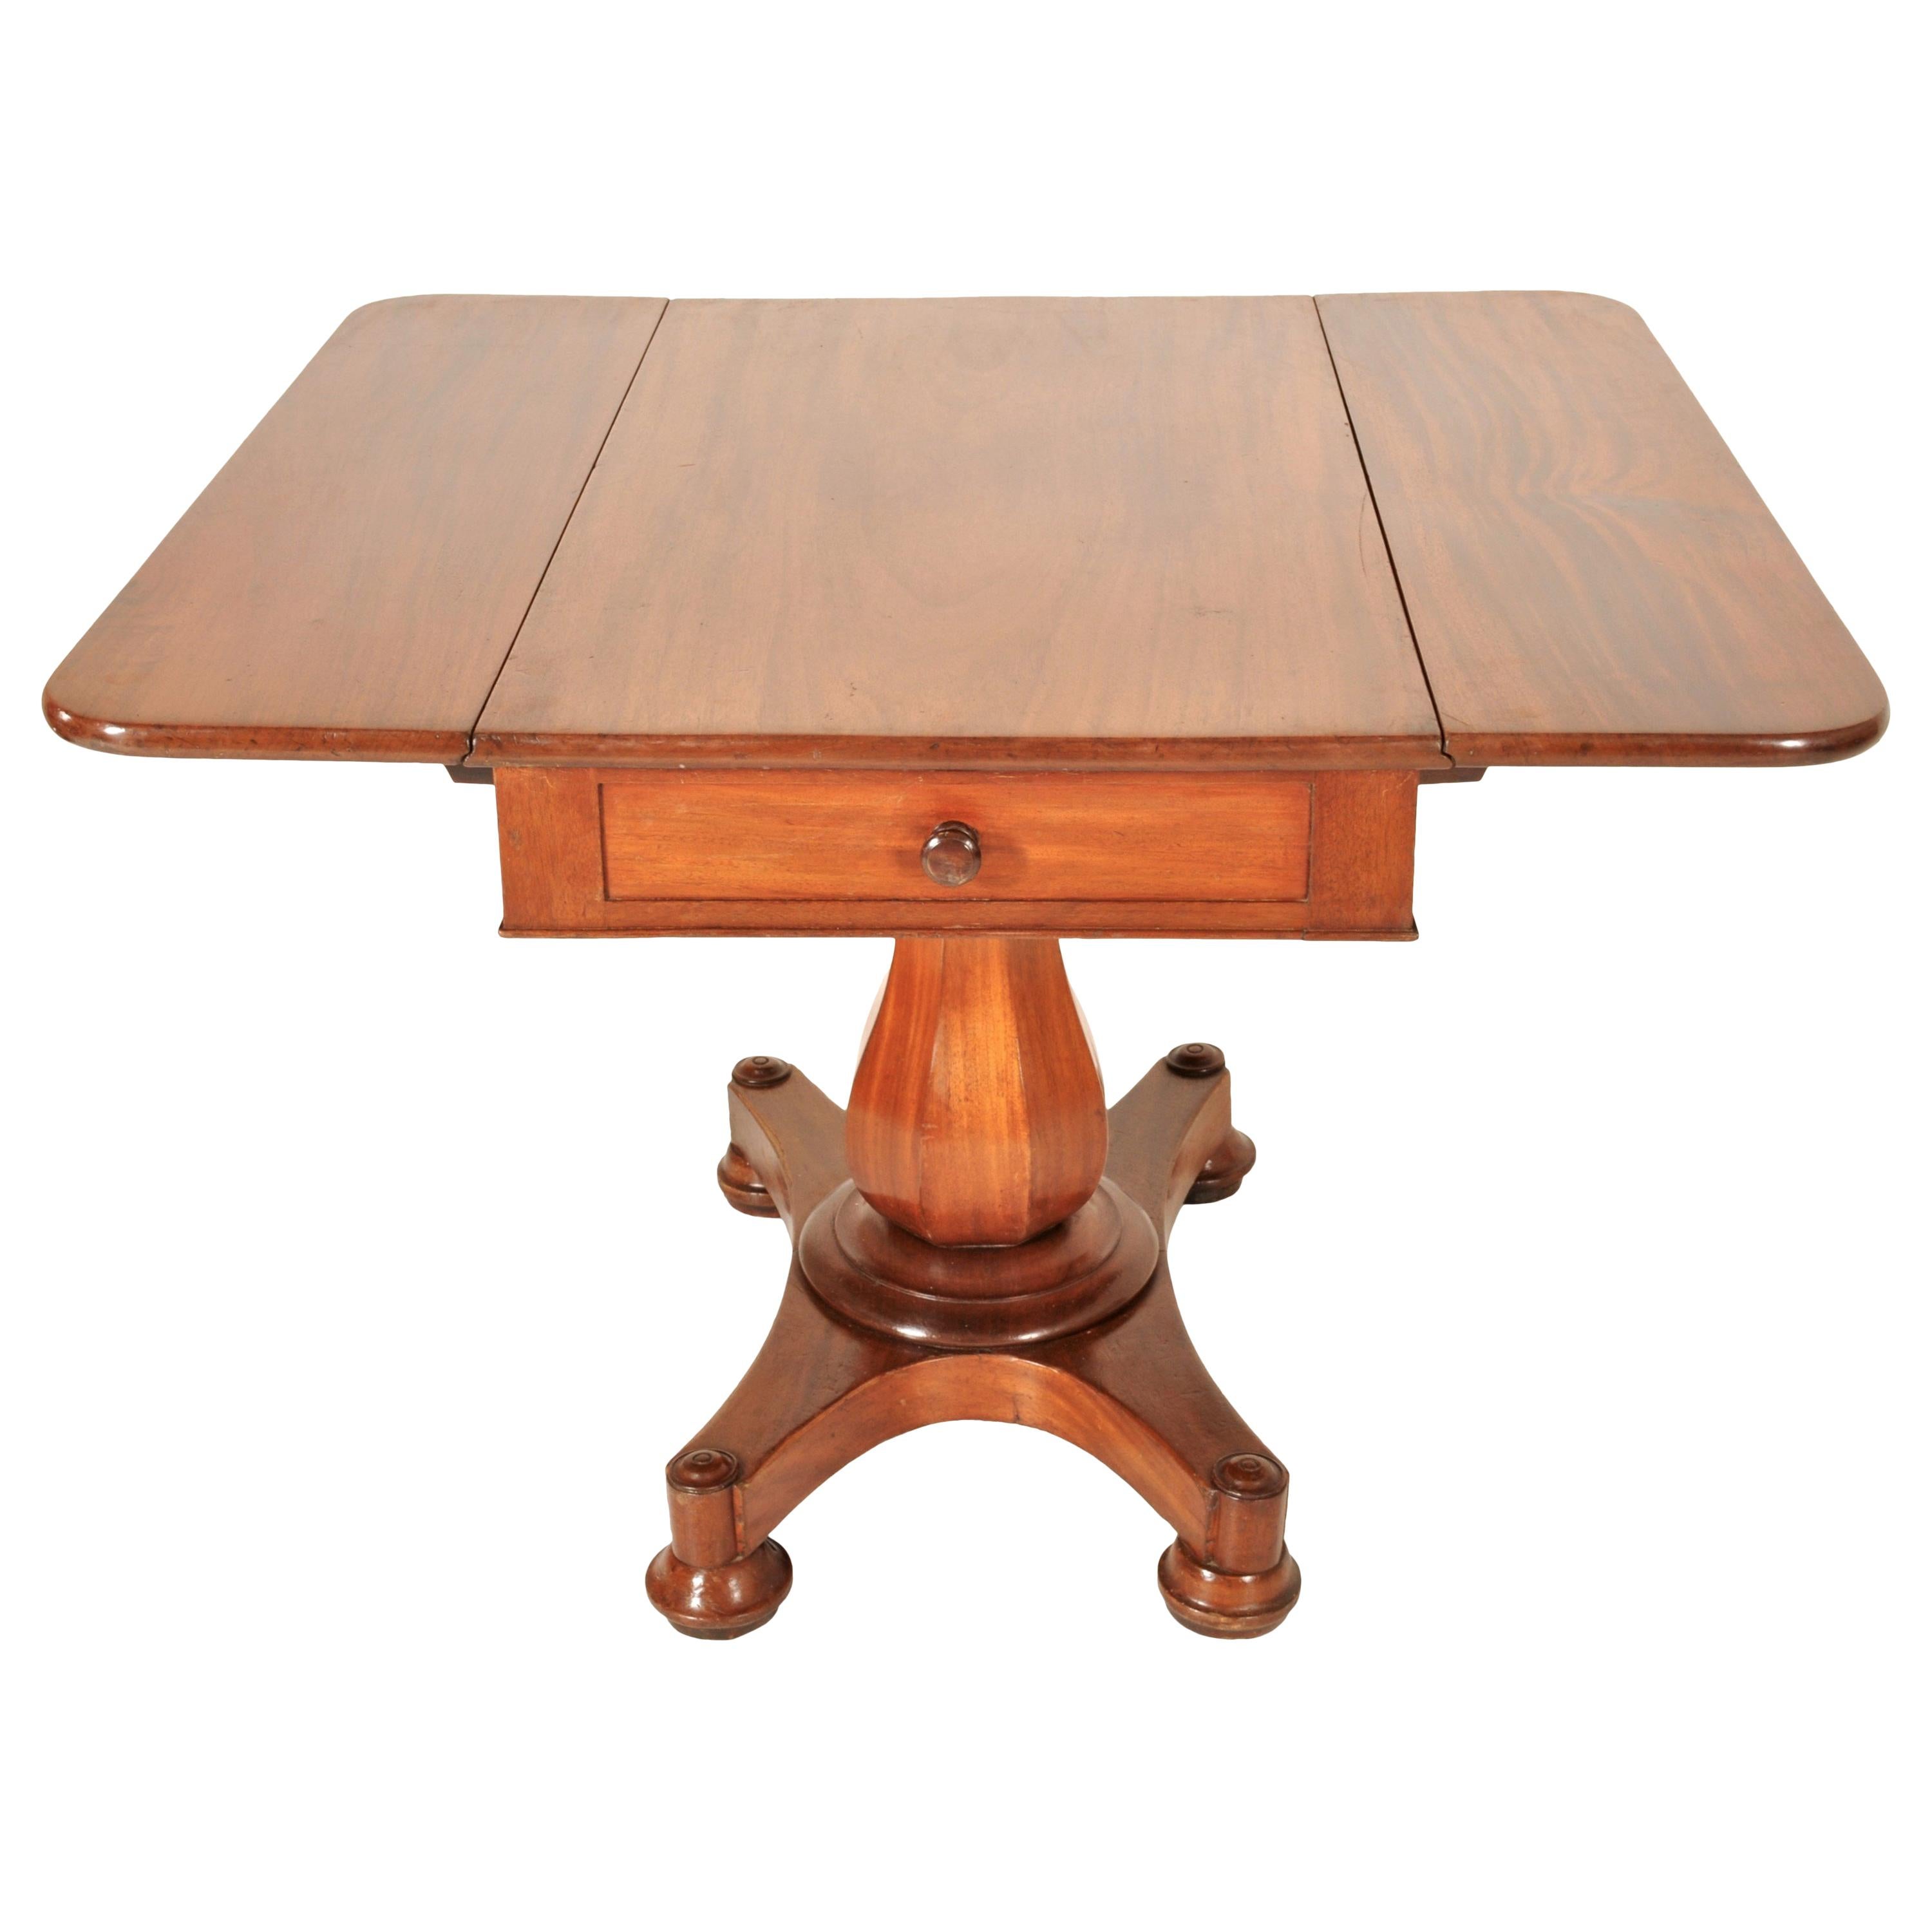 Antique American Classical Mahogany Drop Leaf Pedestal Pembroke Table circa 1840 For Sale